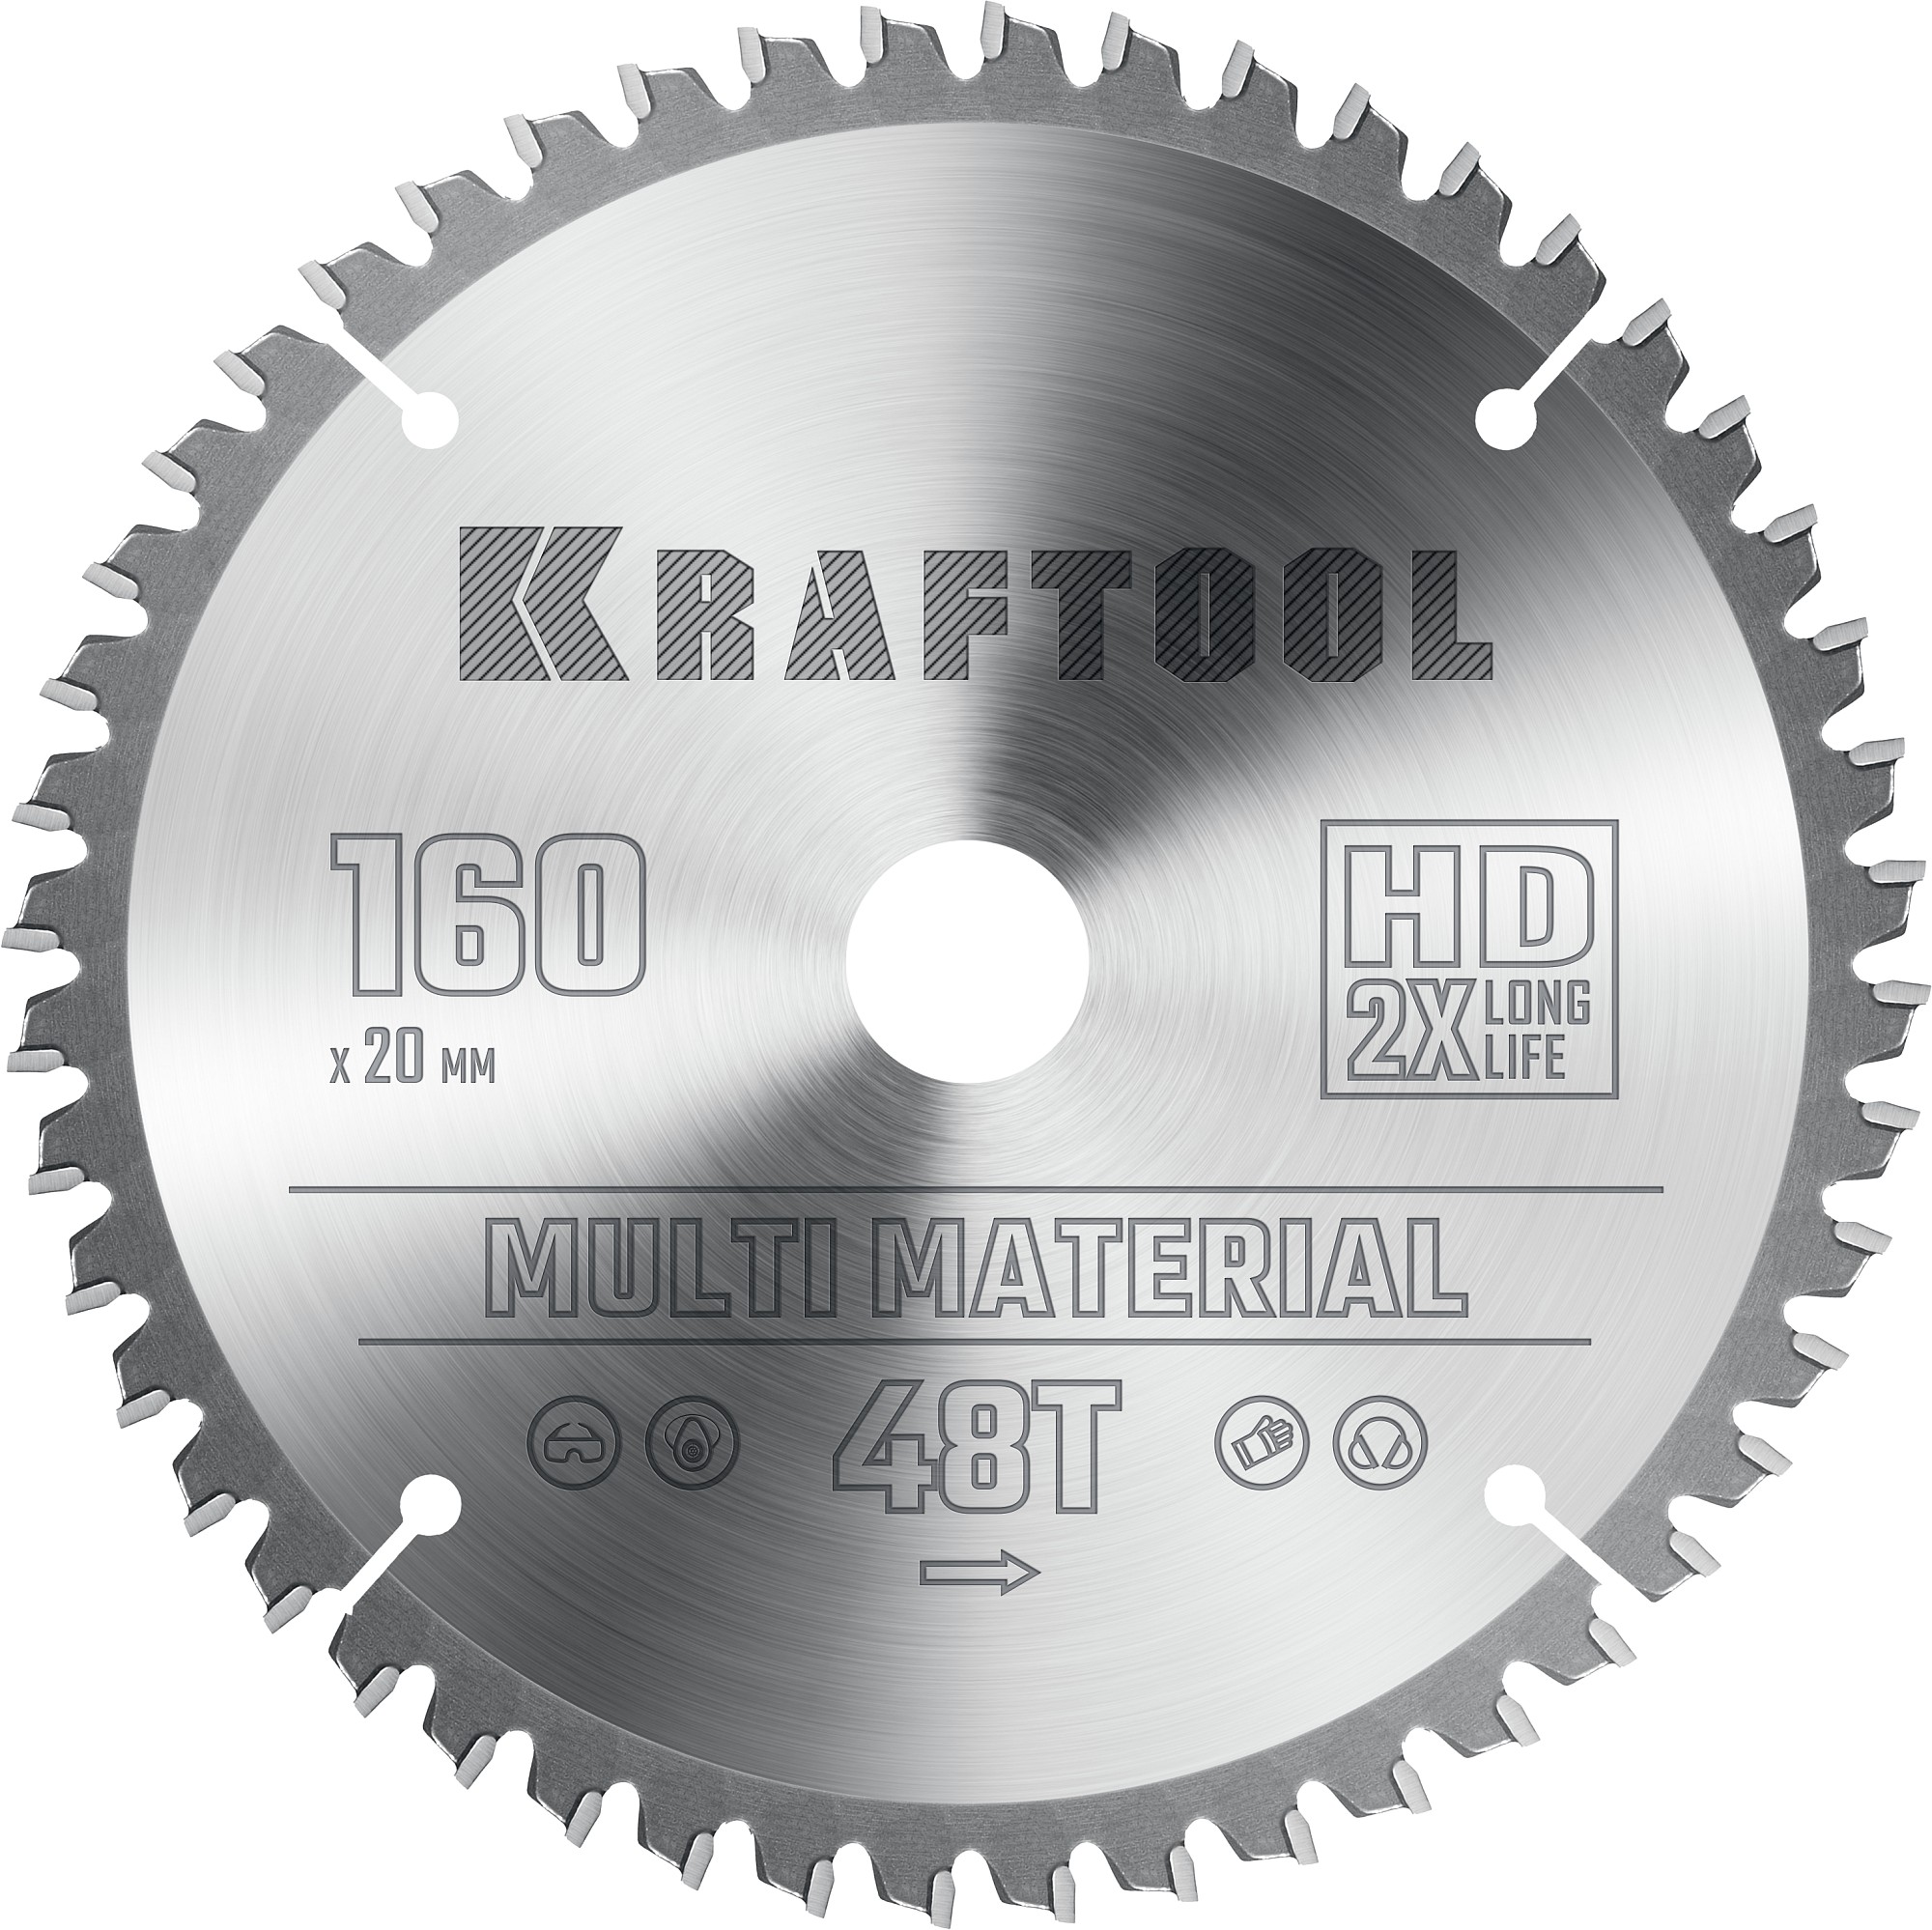 Диск пильный по алюминию Kraftool Multi Material 160х20 мм, 48Т 36953-160-20 диск пильный по алюминию kraftool multi material 160х20 мм 48т 36953 160 20